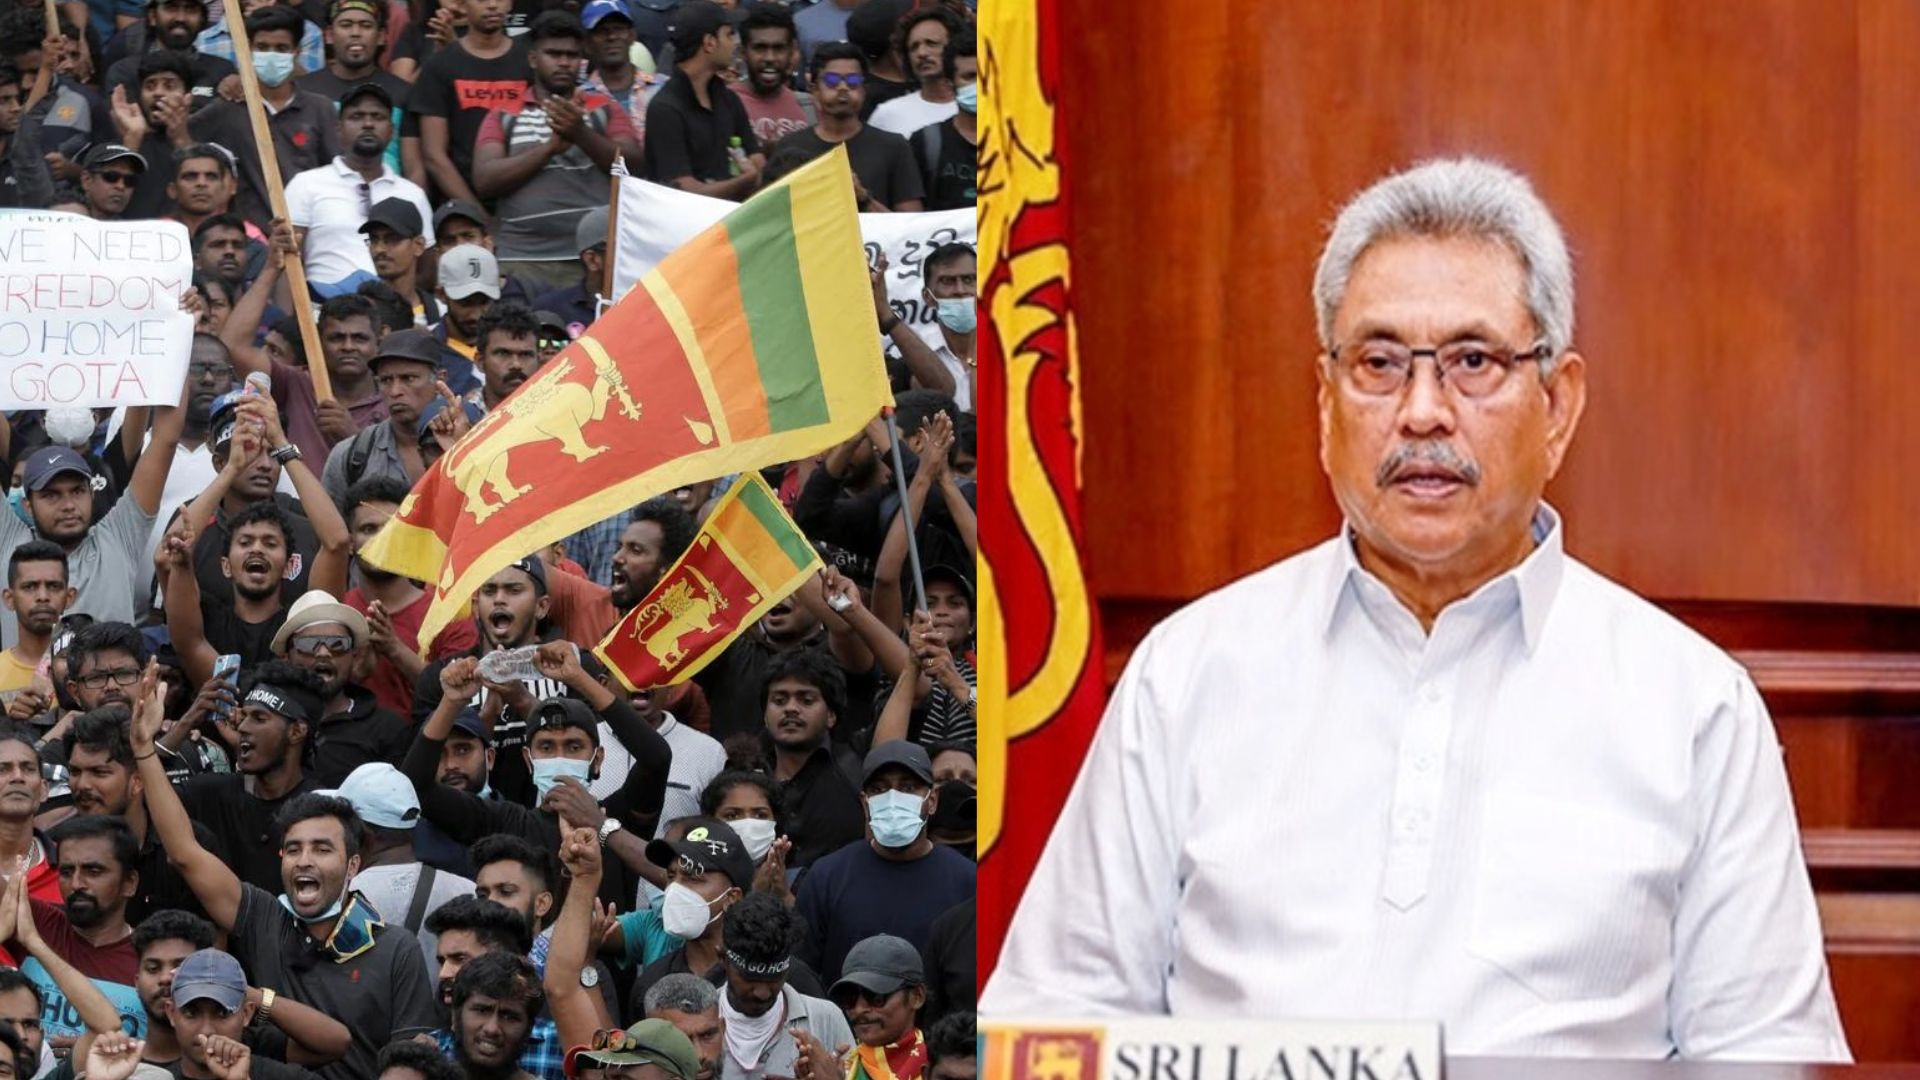 Sri Lanka Crisis: 20 जुलाई को होगा श्रीलंका के नए राष्ट्रपति का चुनाव, 13 जुलाई को इस्तीफा देंगे राजपक्षे